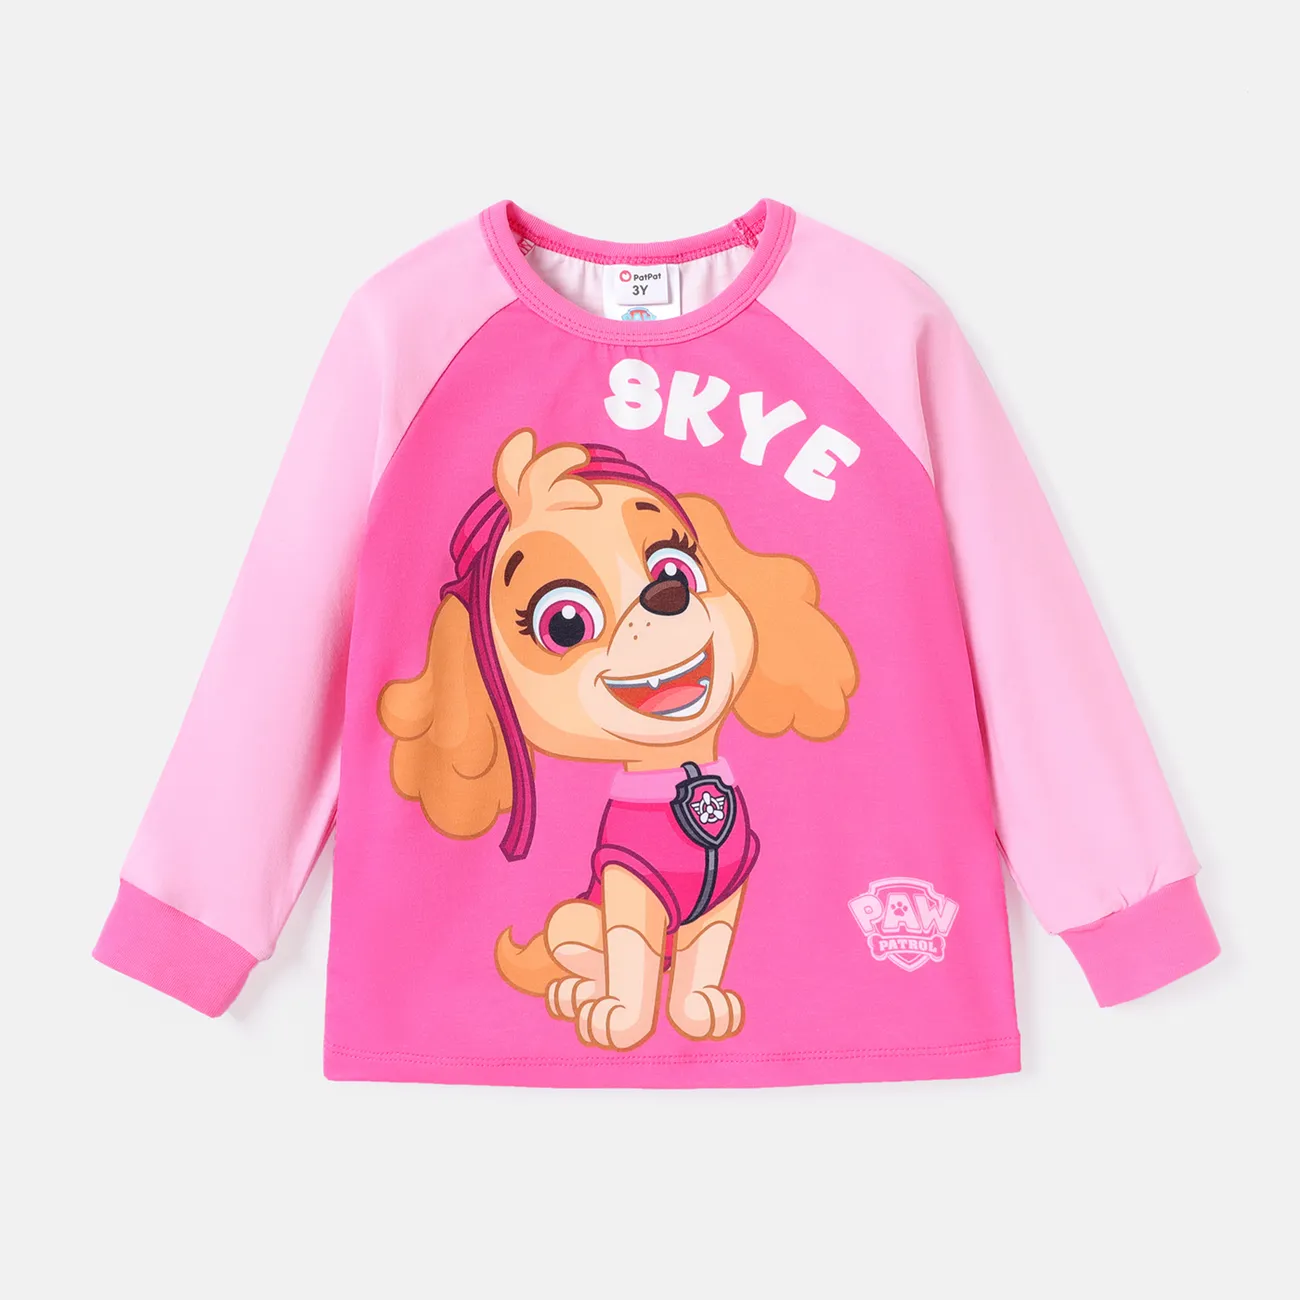 Patrulla de cachorros Niño pequeño Unisex Costura de tela Infantil Perro Manga larga Camiseta Rosado big image 1